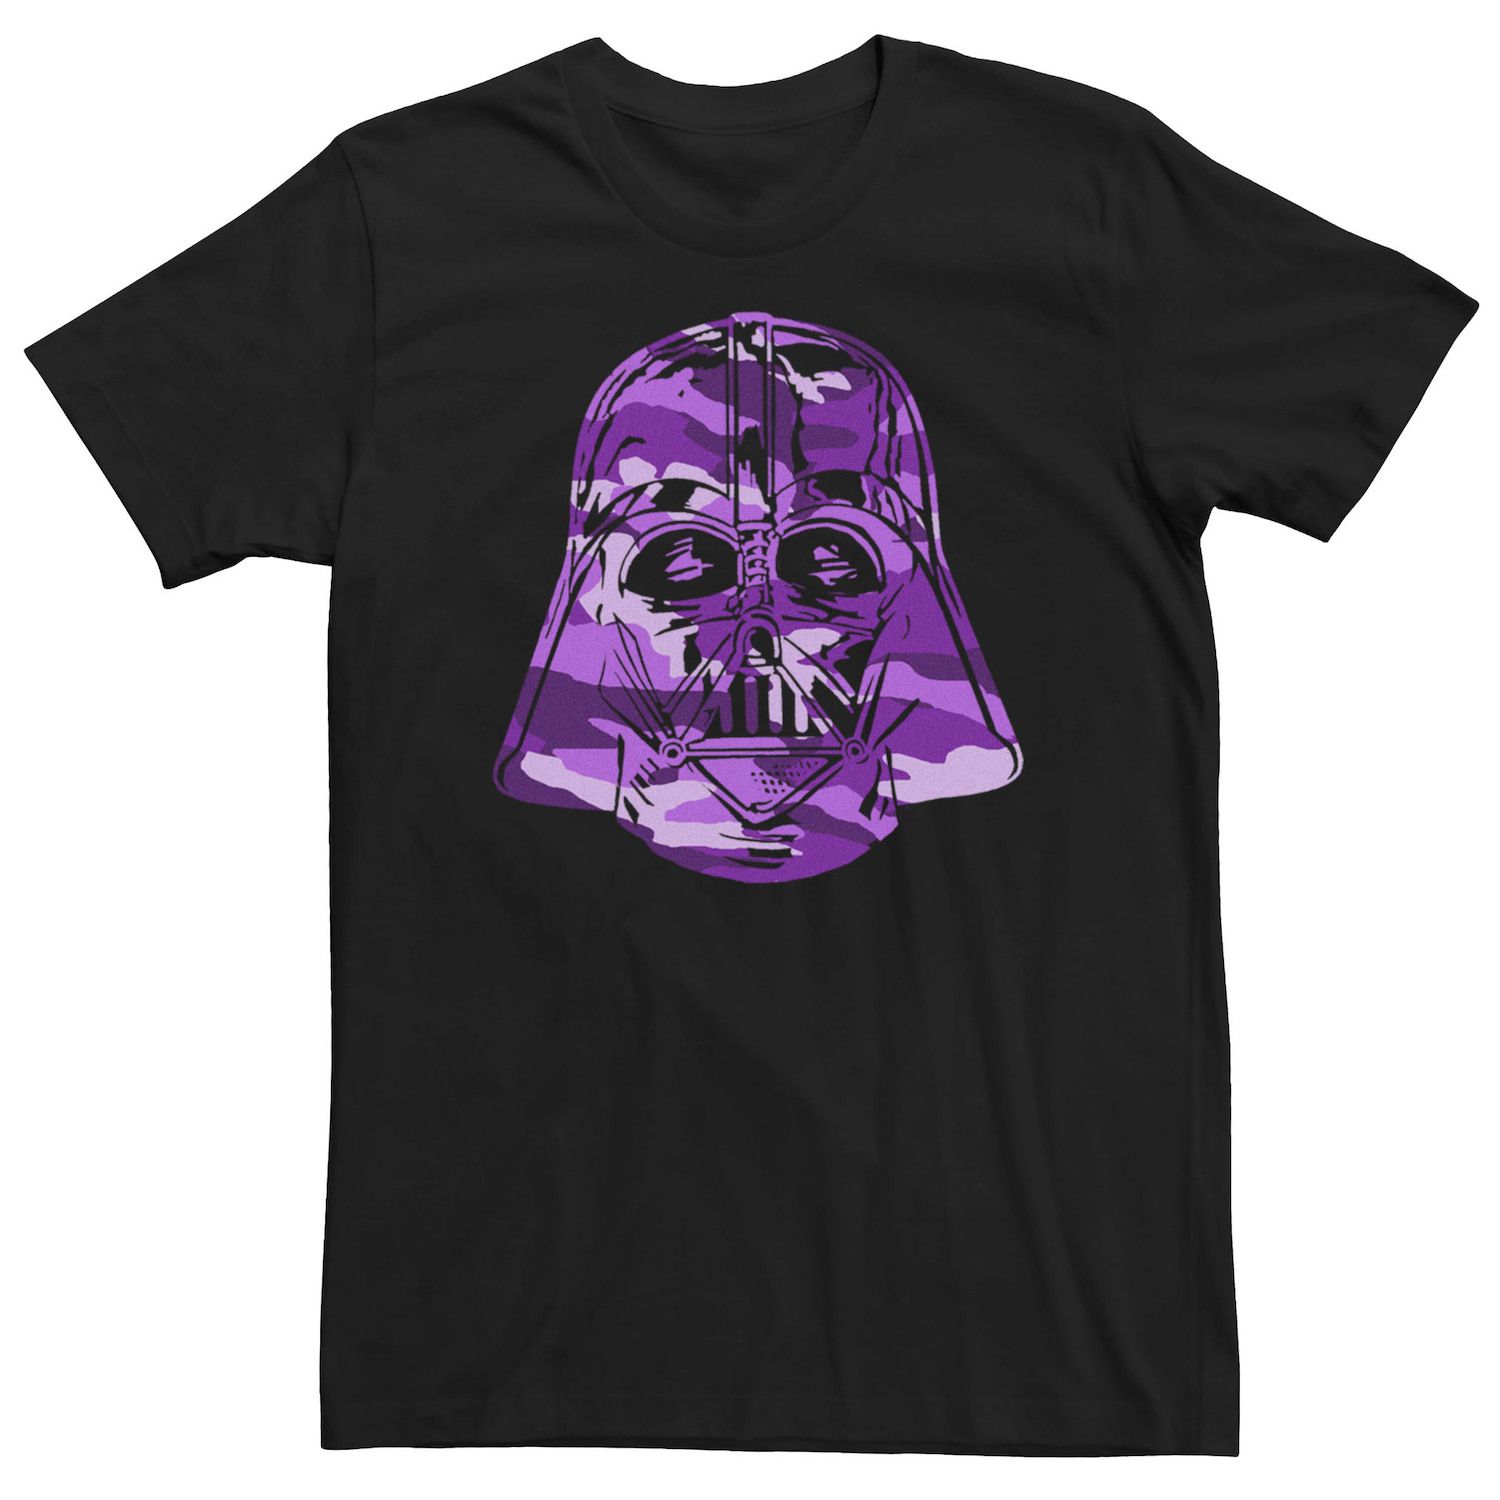 Мужская камуфляжная футболка Вейдера с большим лицом «Звездные войны» Star Wars